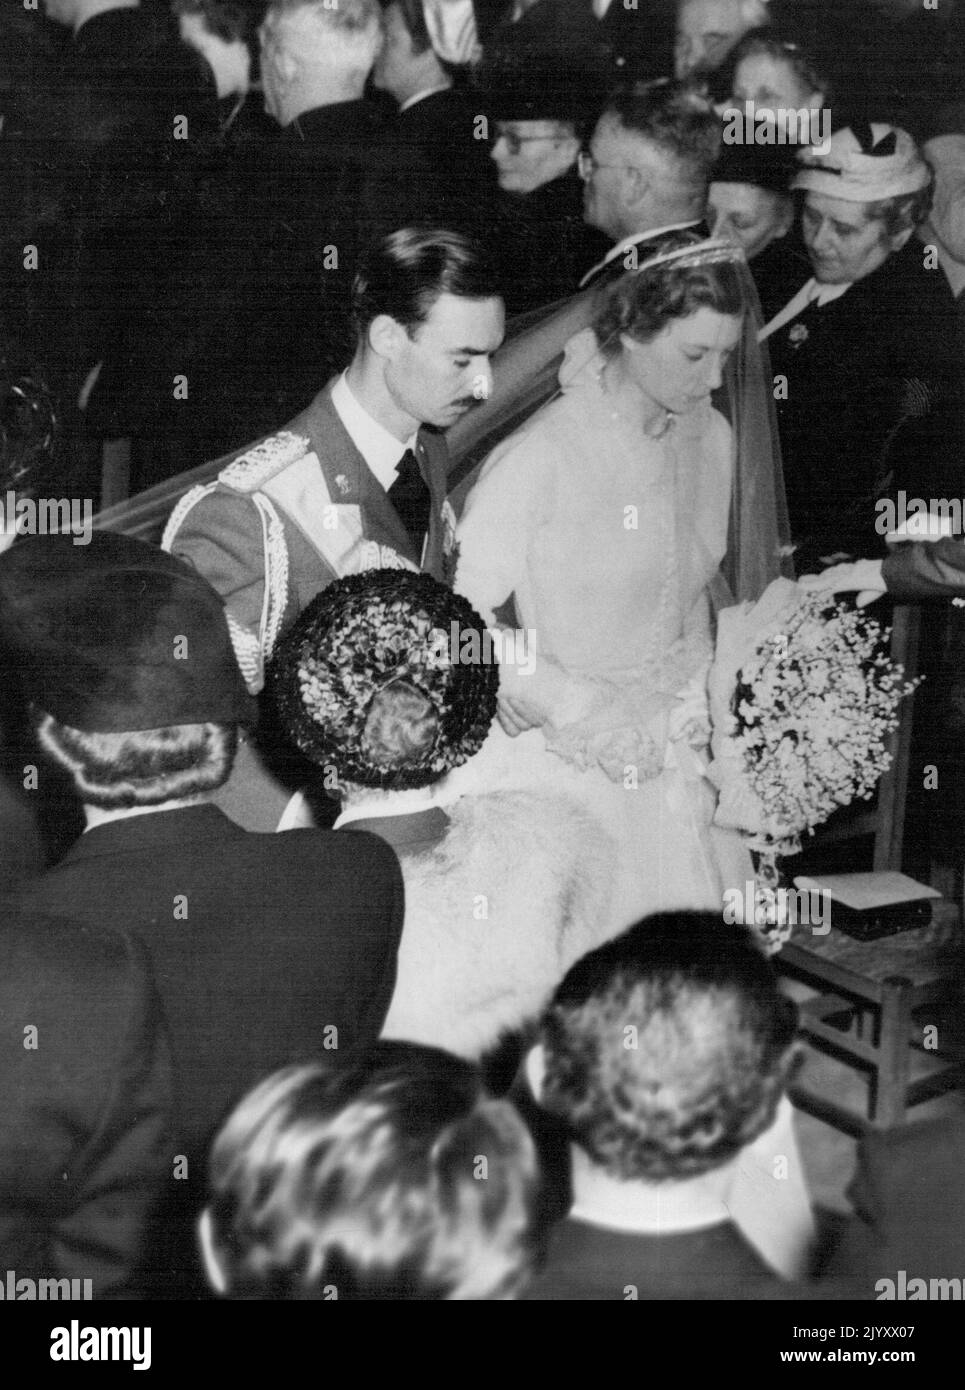 Ein Prinz und seine Prinzessin Braut. Prinz Jean von Luxemburg und seine Braut, Prinzessin Josephine-Charlotte von Belgien, gehen hier nach ihrer Hochzeit den Gang der Kathedrale entlang. 9. April 1953. (Foto von United Press Photo). Stockfoto